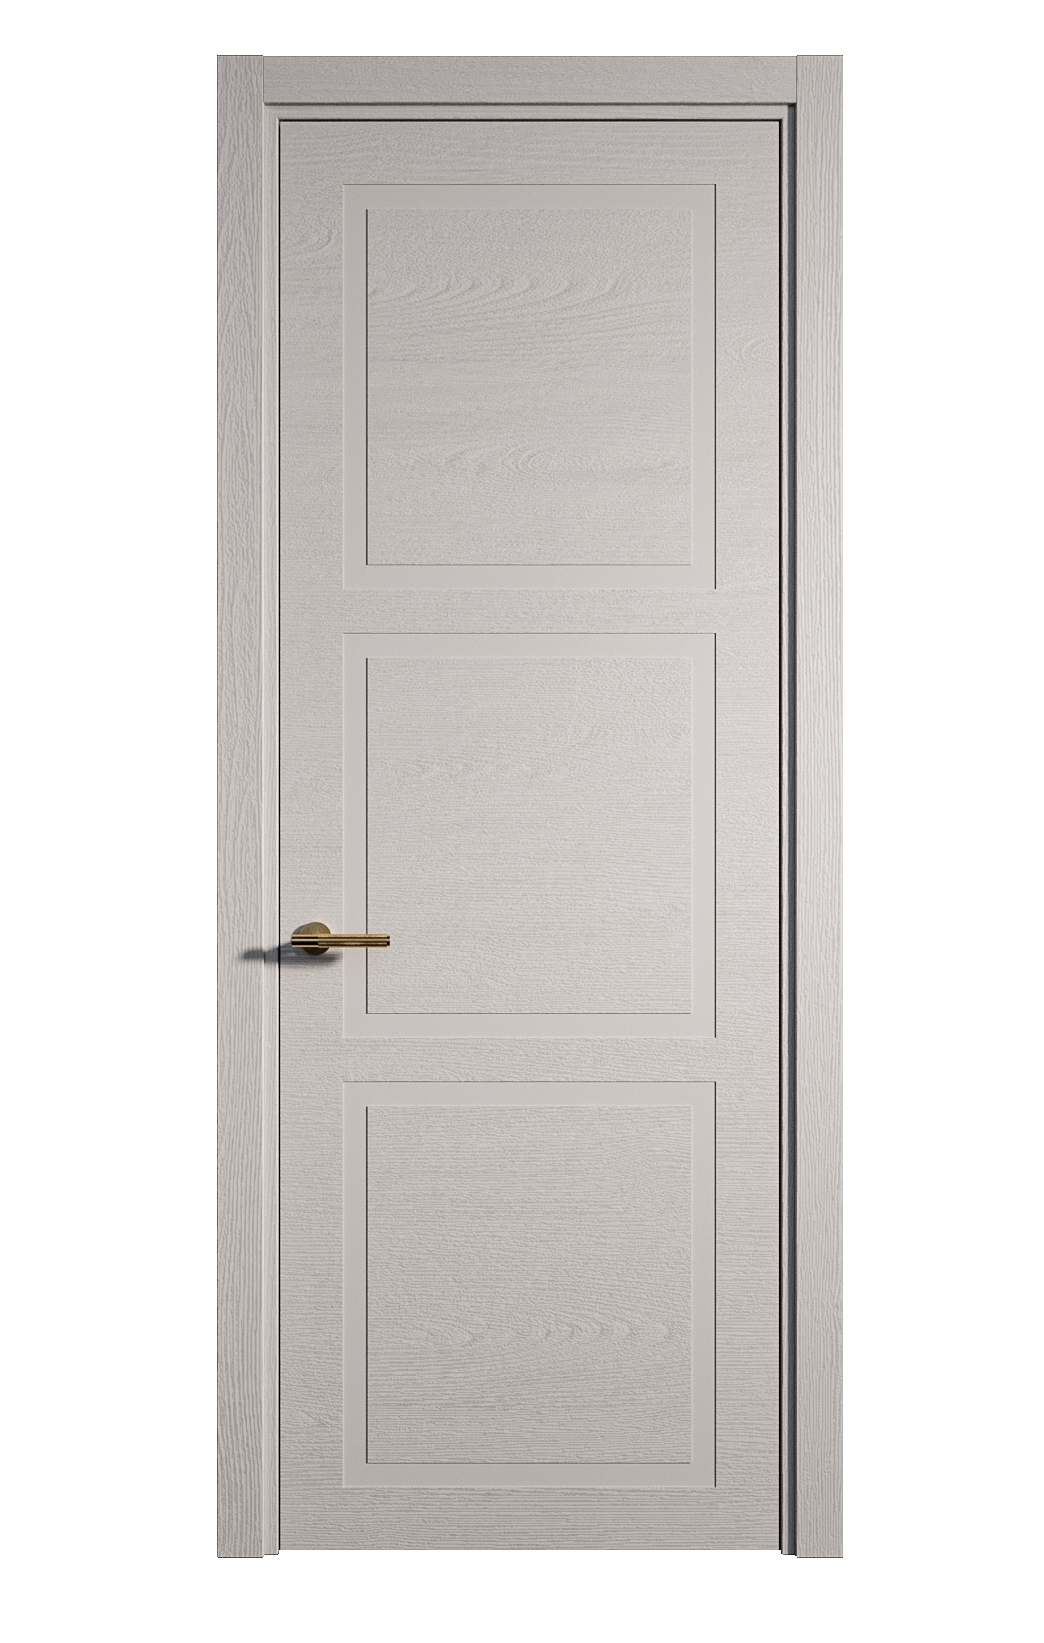 Межкомнатная дверь Бостон-3 глухая эмаль ral 7047 24477